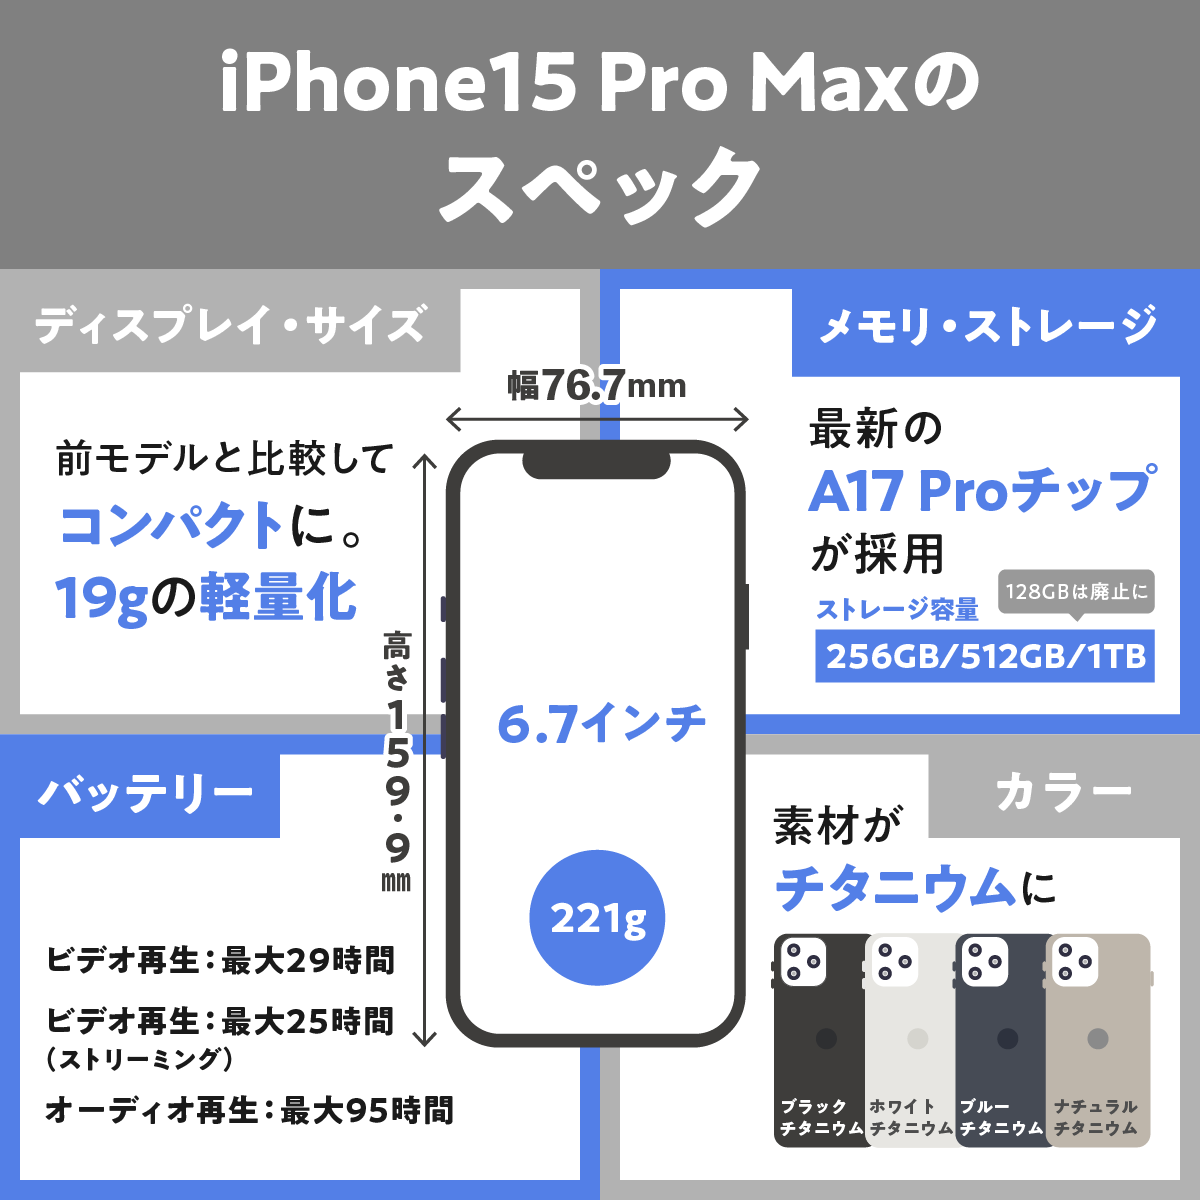  iPhone15 Pro Maxのスペックを評価レビュー